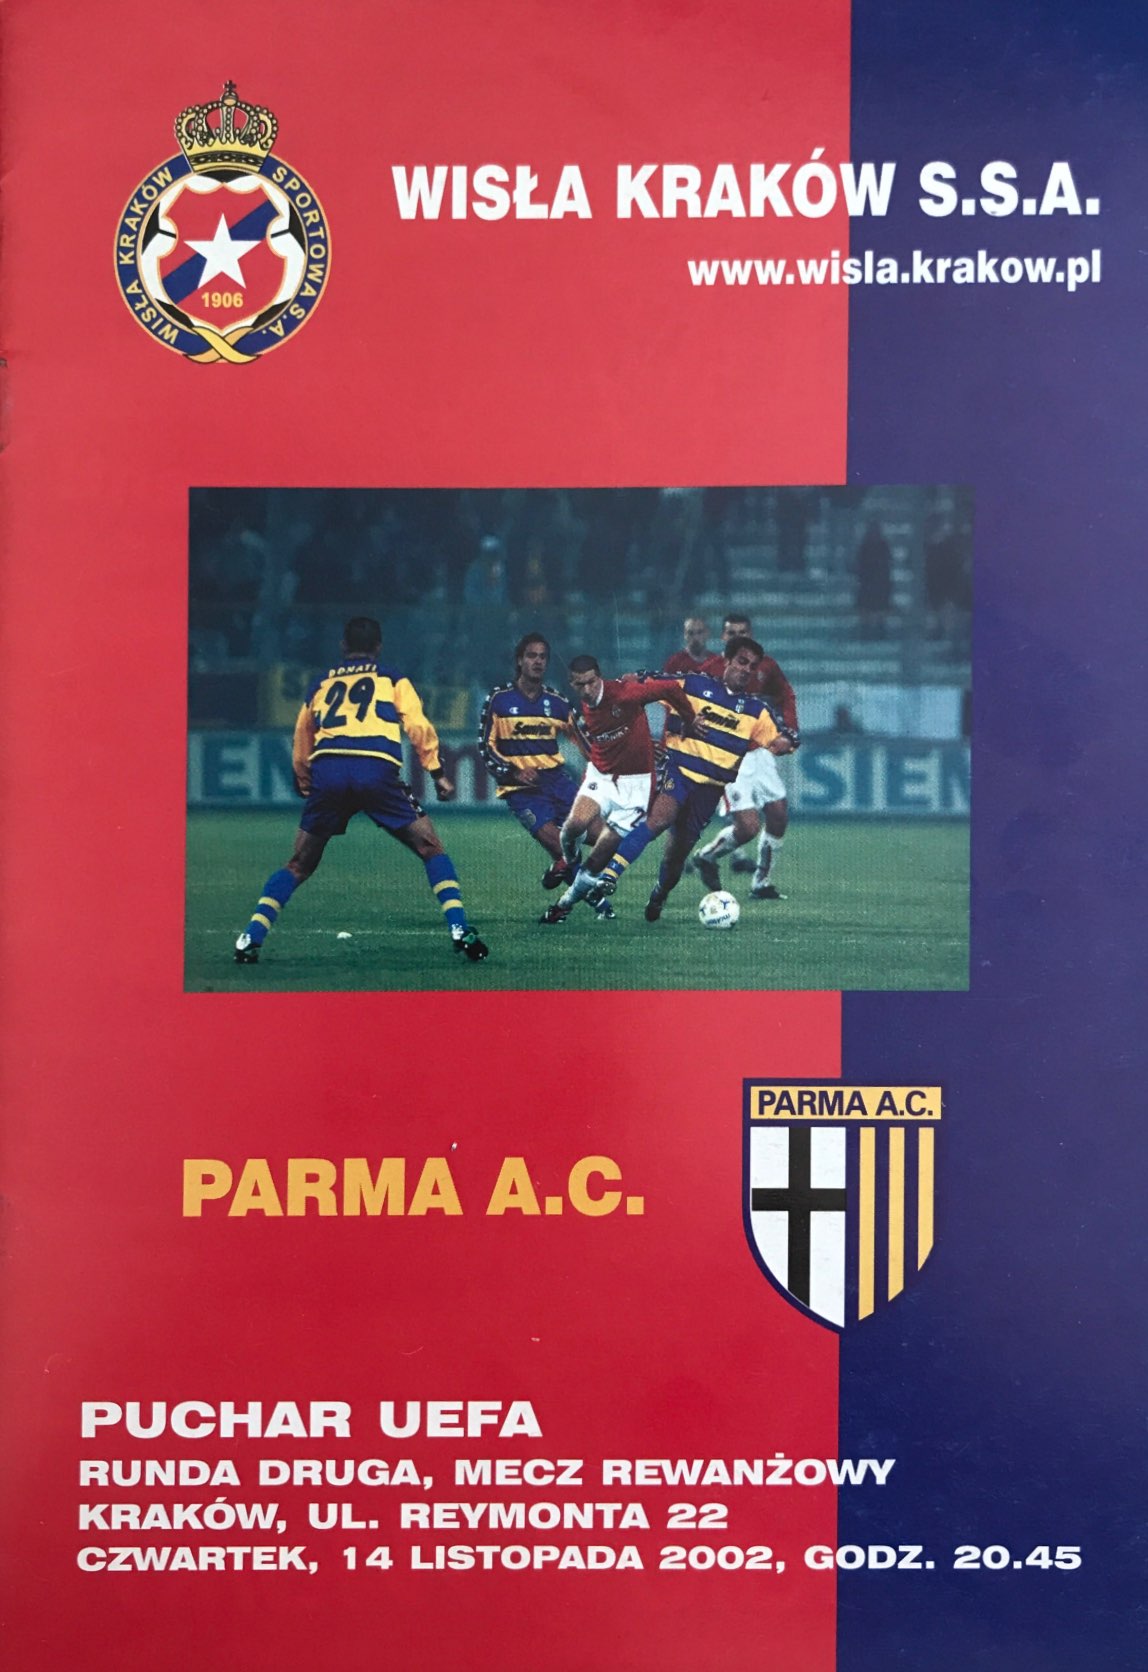 Program meczowy Wisła Kraków - AC Parma 4:1 pd. (14.11.2002).